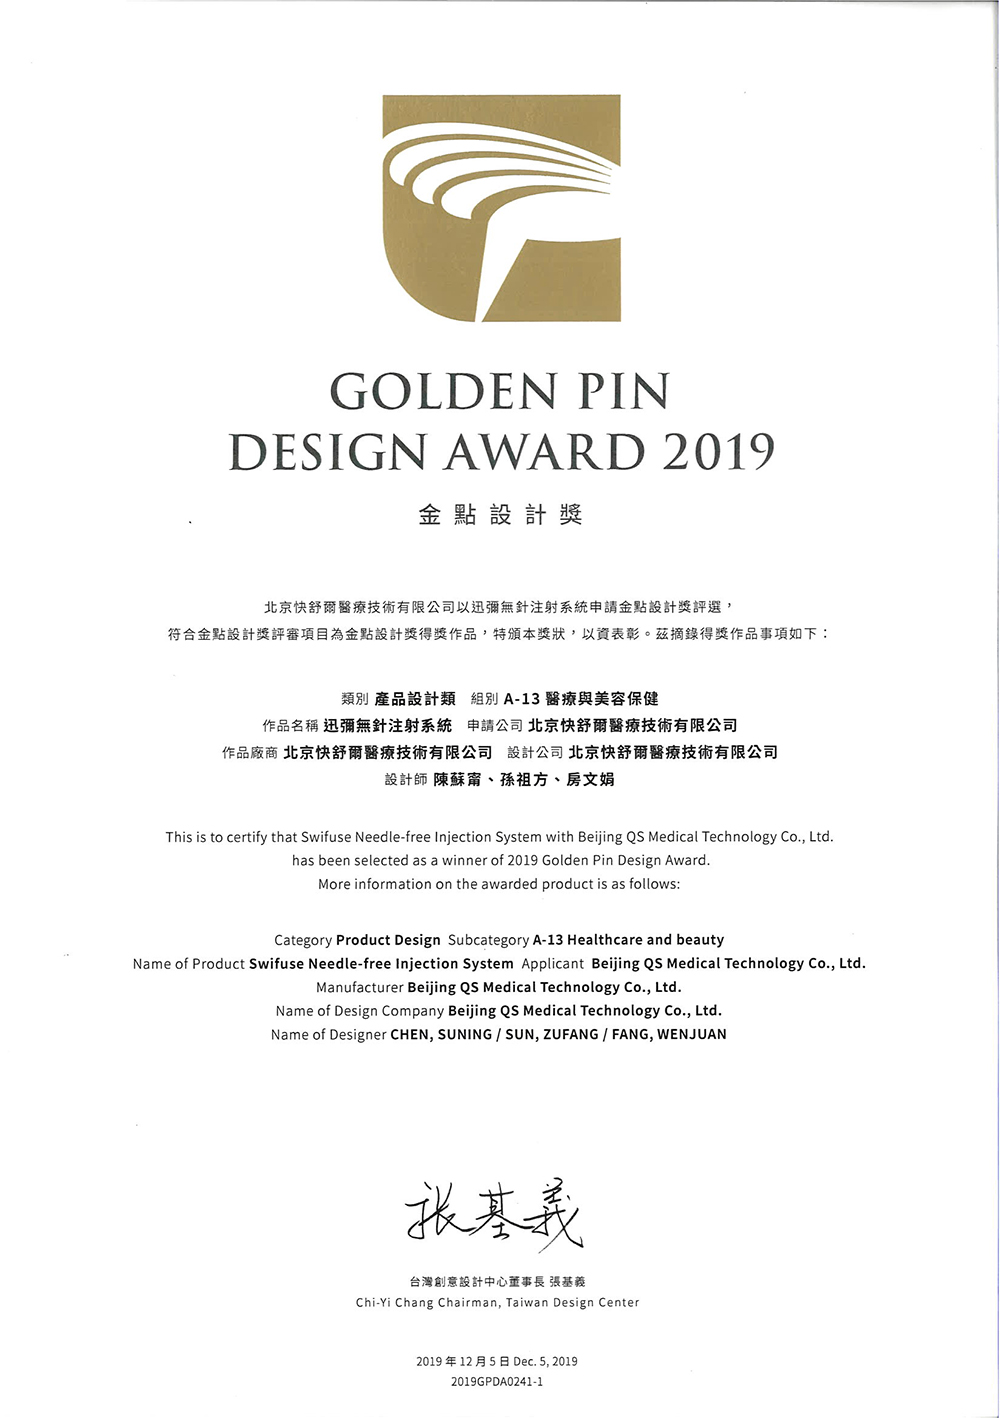 Tayvan Altın Nokta Ödülü